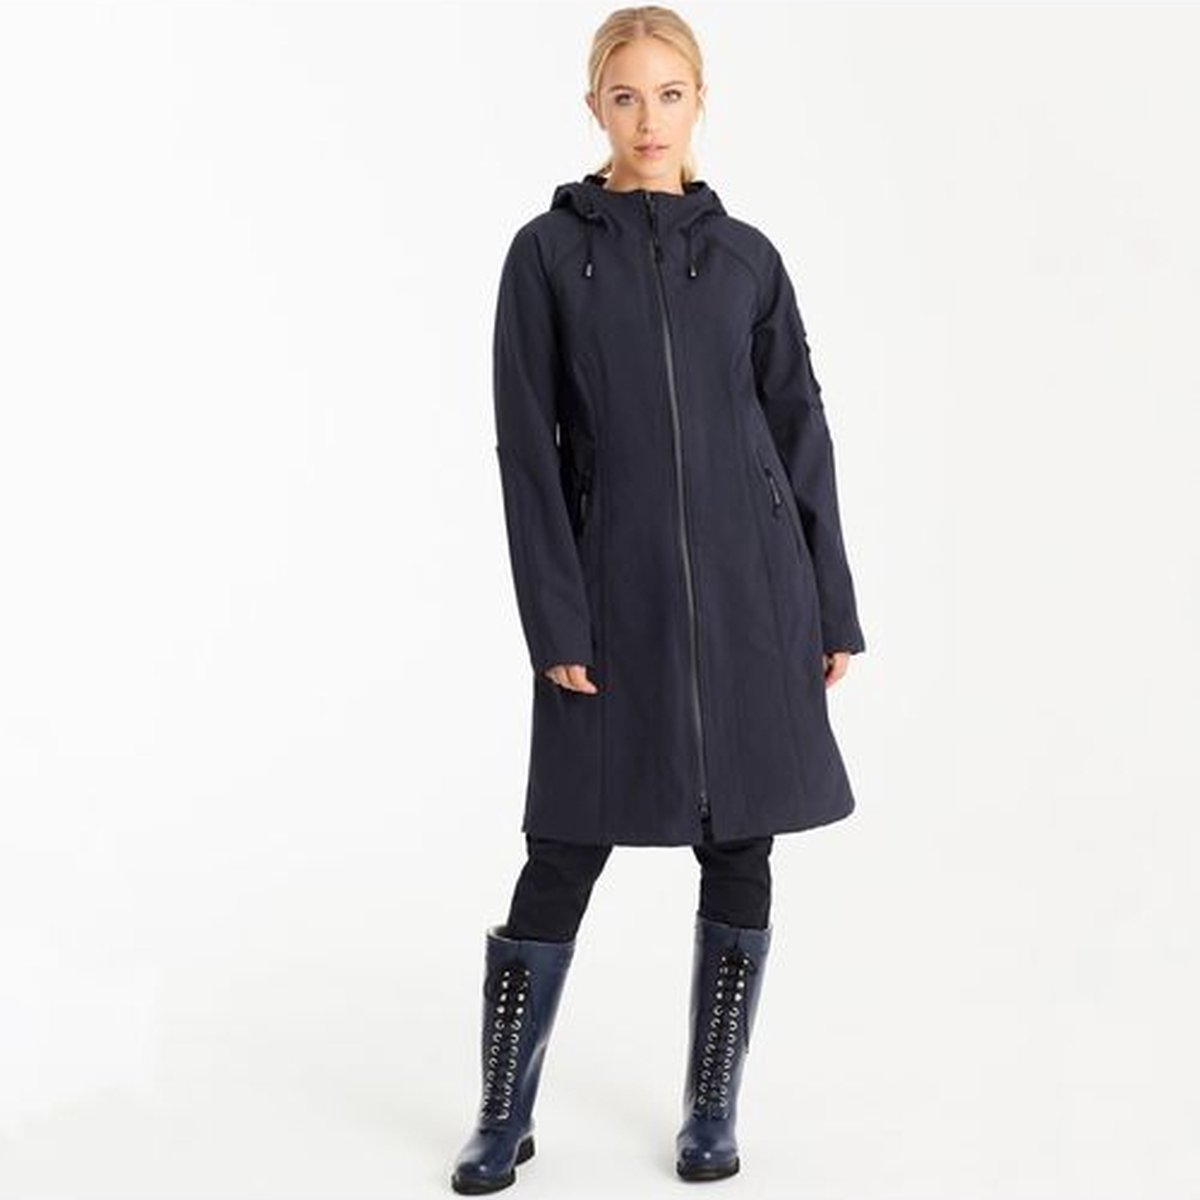 Regenjas Dames - Ilse Jacobsen Raincoat RAIN37L Dark Indigo - Maat 44 - Ilse Jacobsen